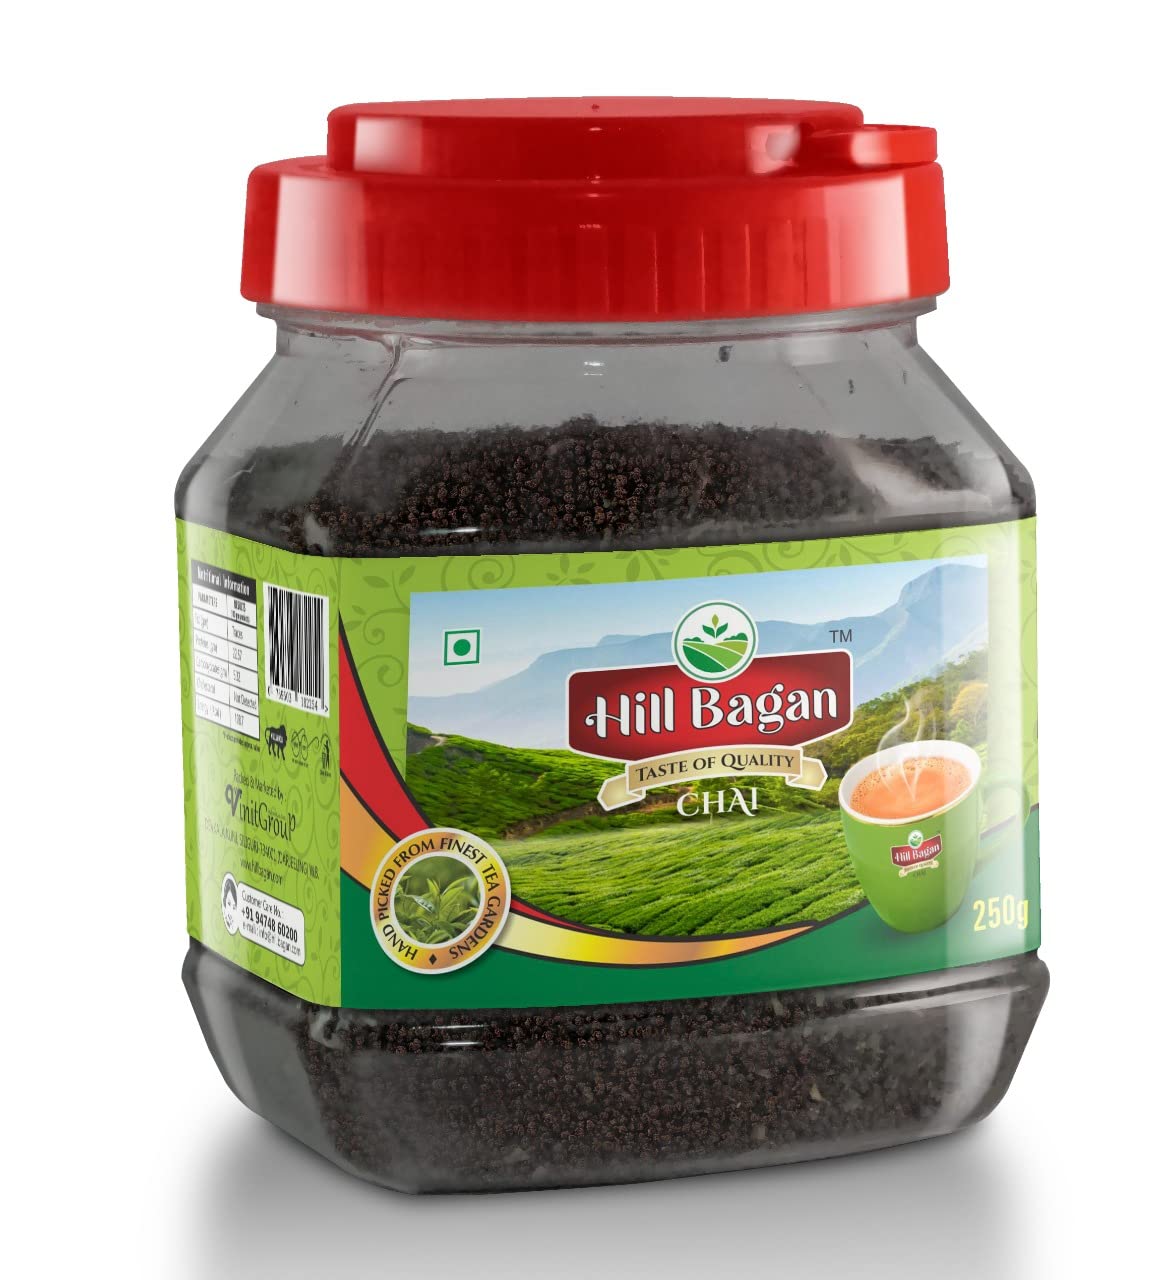 Hill Bagan CTC Premium Darjeeling Tea